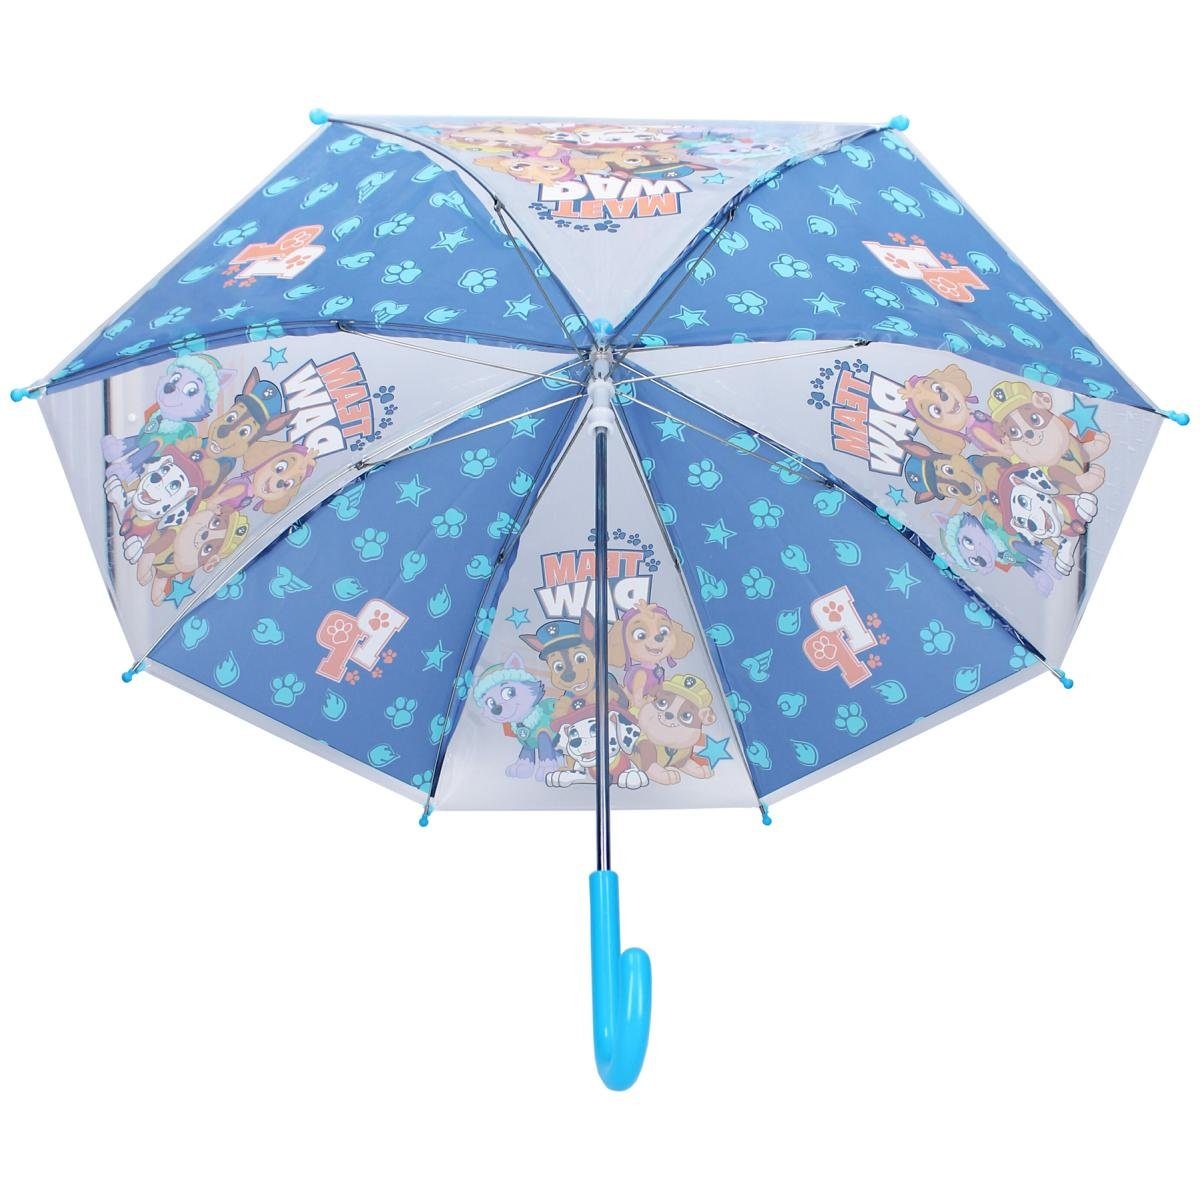 Sunny Regenschirm Vadobag Days Paw Stockregenschirm Kinderschirm Patrol Ahead